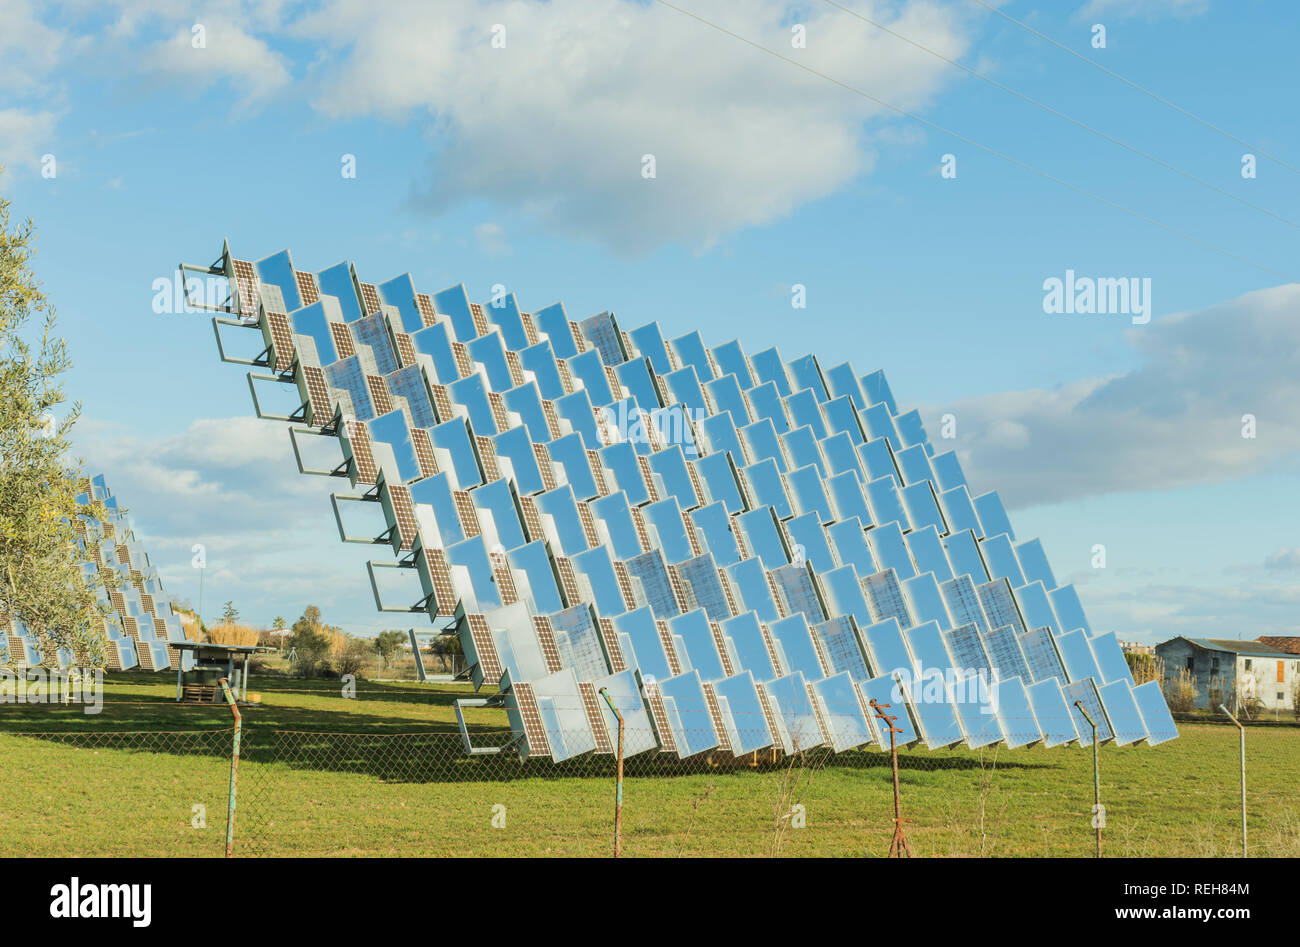 Panneau solaire photovoltaïque dans un verger solaire, vu d'un côté sur un champ vert Banque D'Images